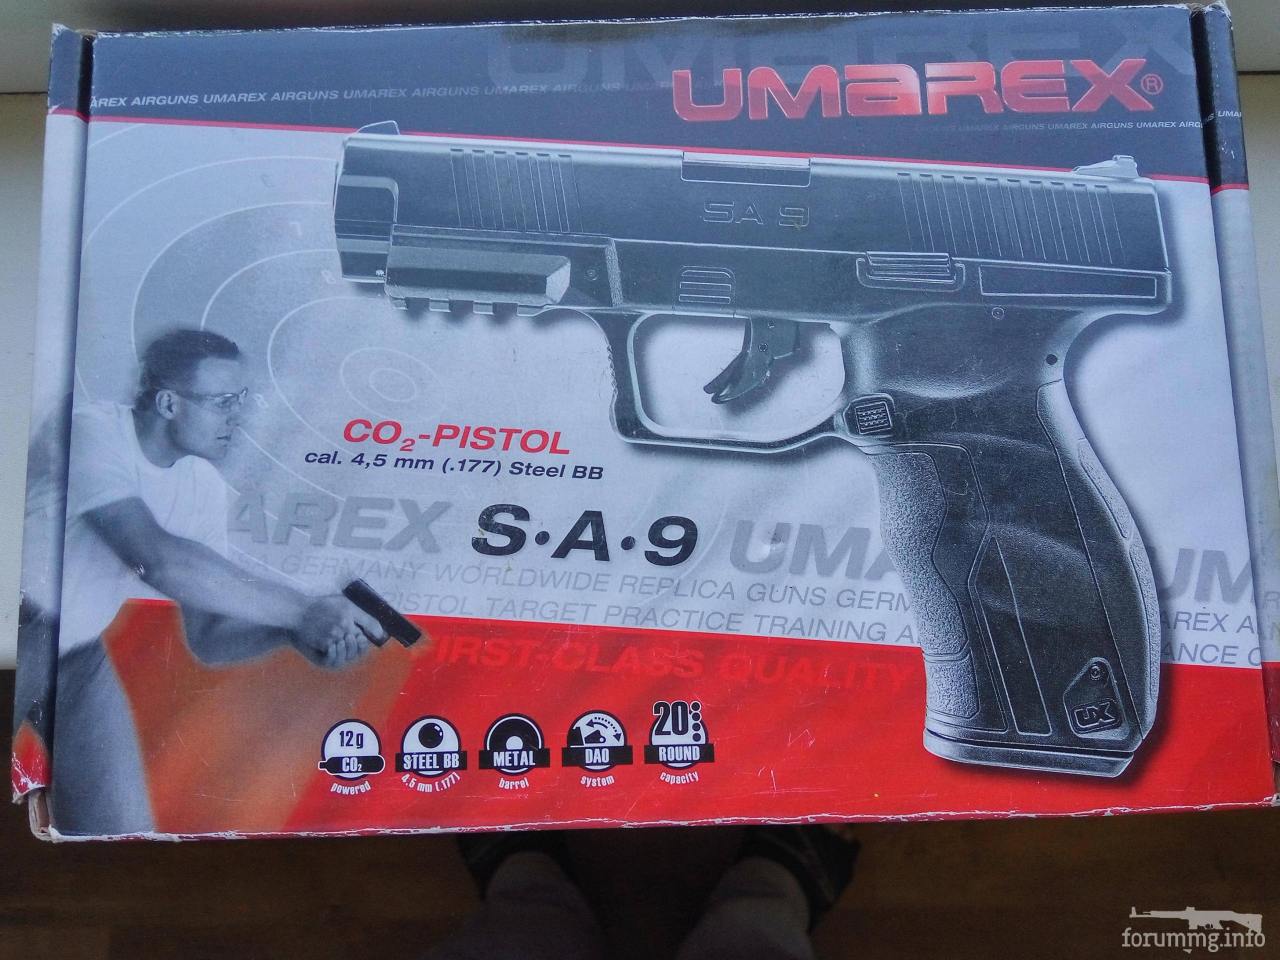 132712 - Продам новый в упаковке Umarex UX SA9